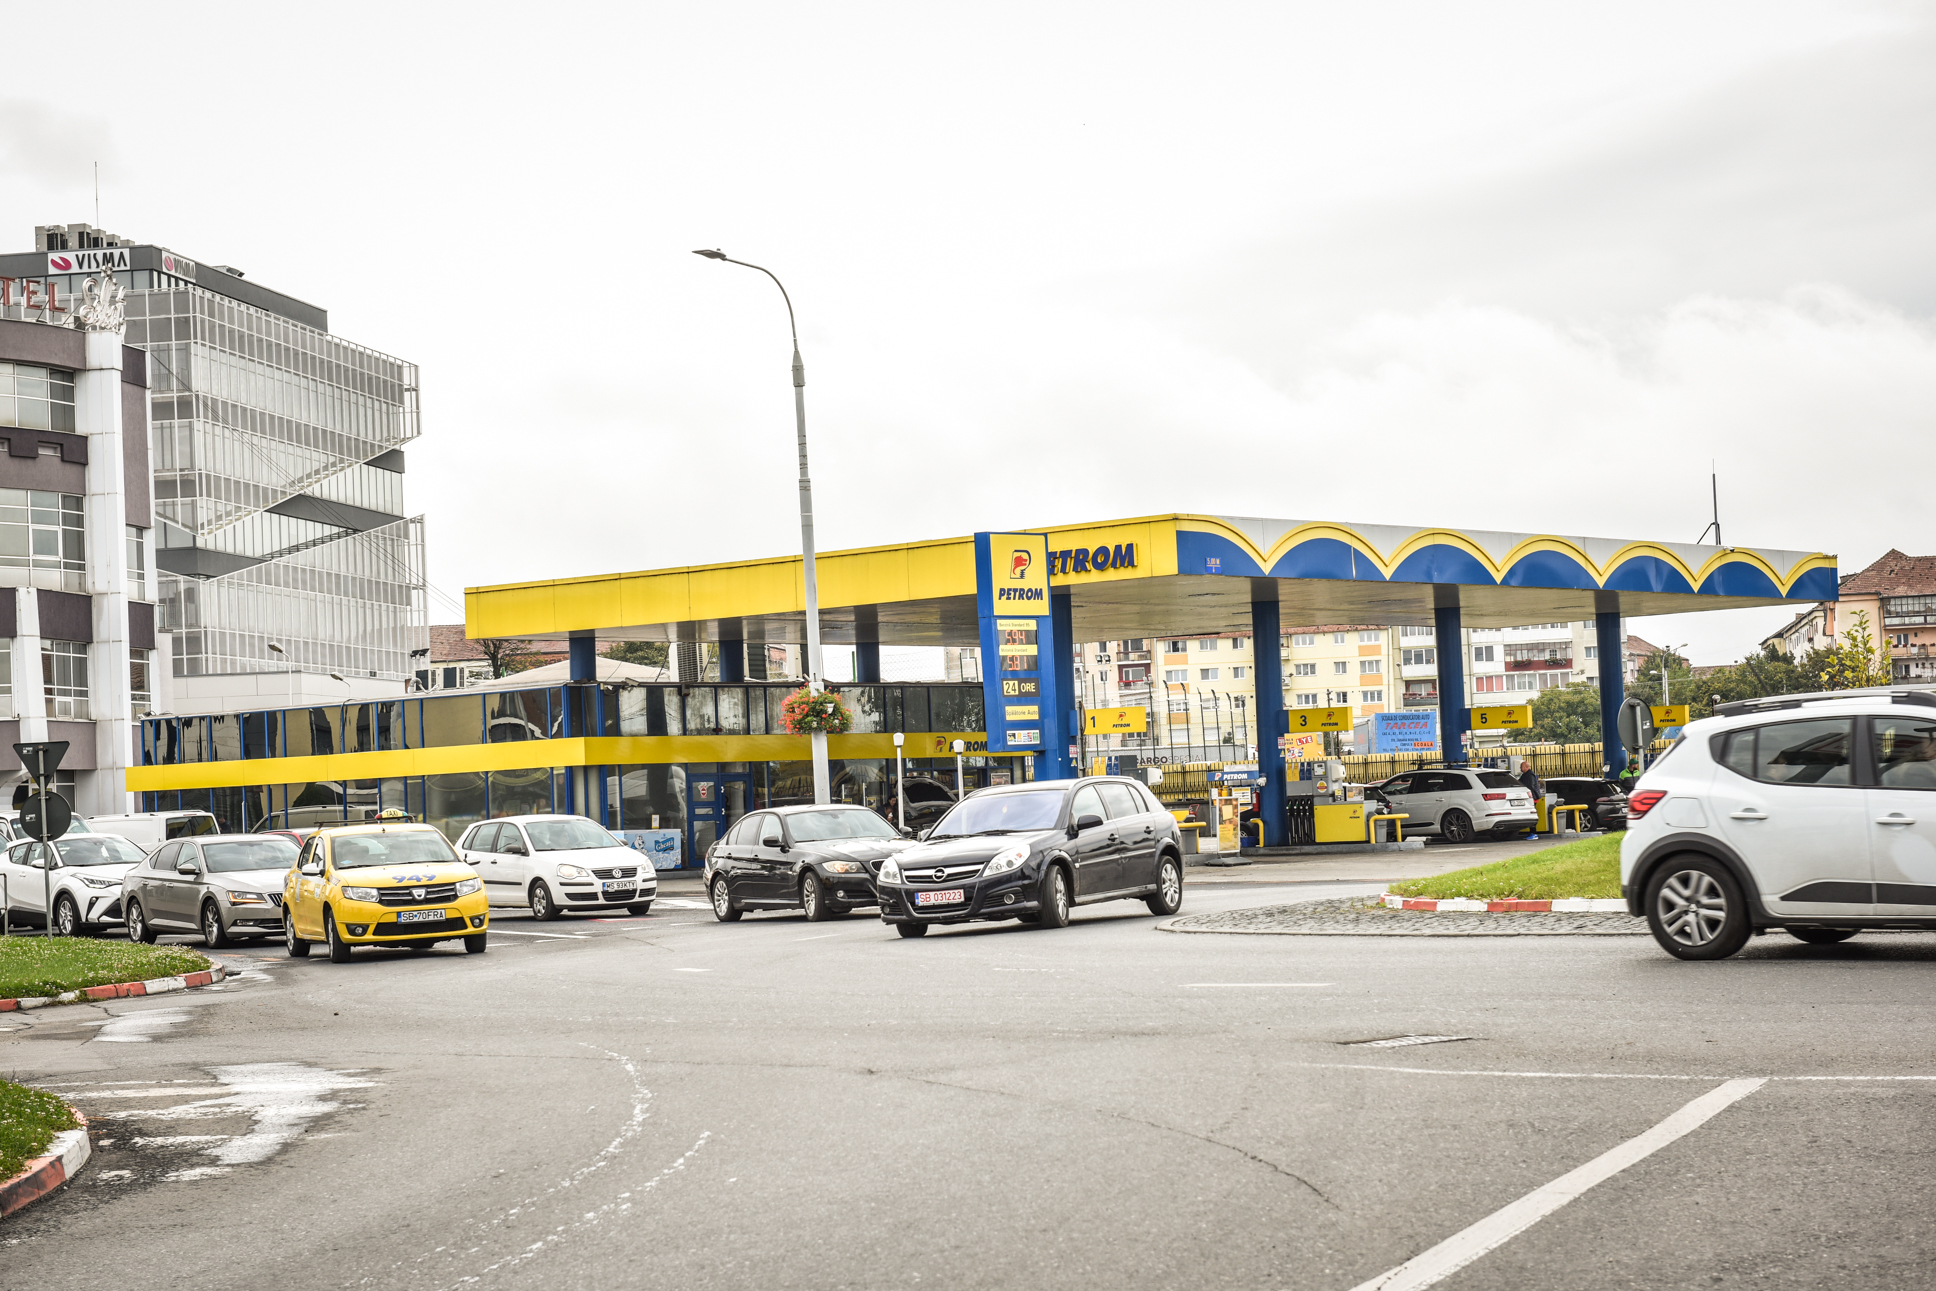 Principalele nereguli găsire de inspectorii ITM Sibiu în benzinăriile din oraș și județ